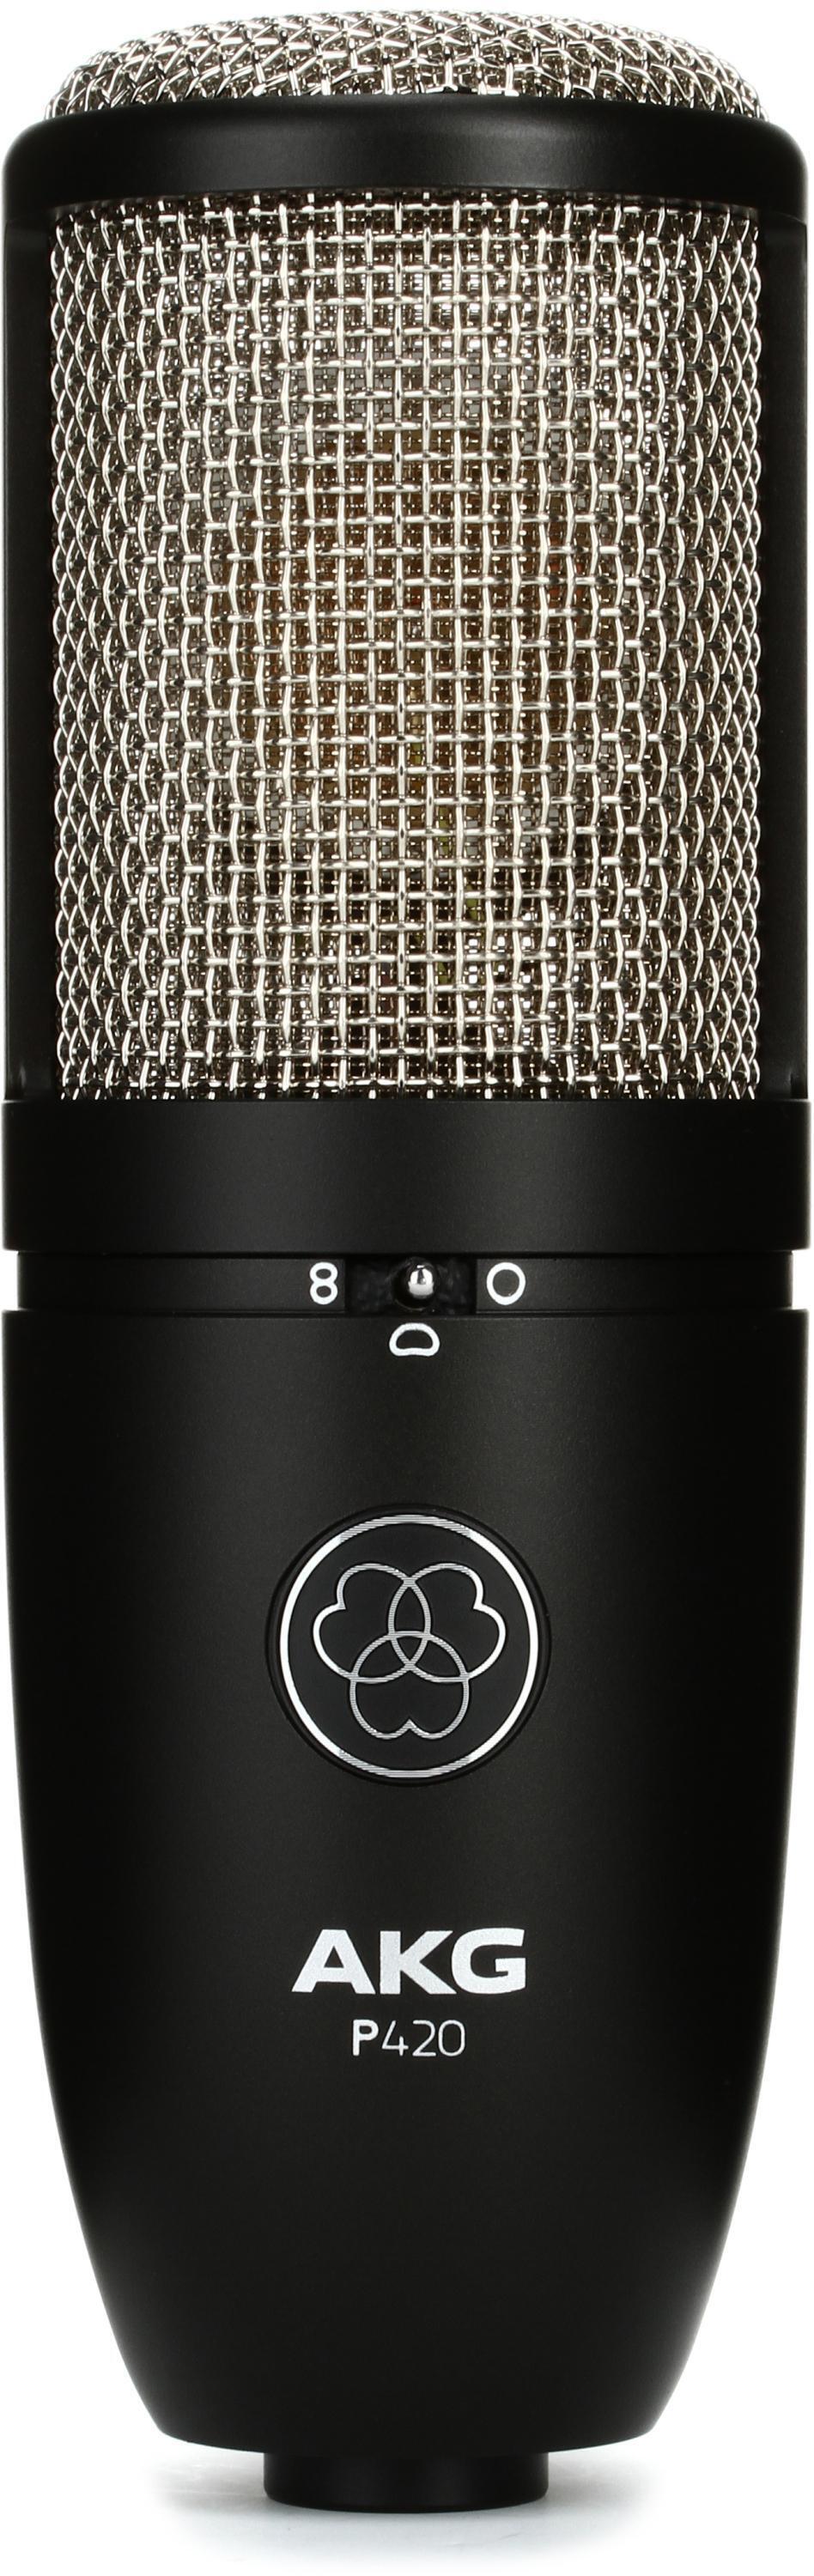 Audio-Technica AT2020 Cardioid Medium-diaphragm Condenser Microphone and  AutoTune Essentials Bundle